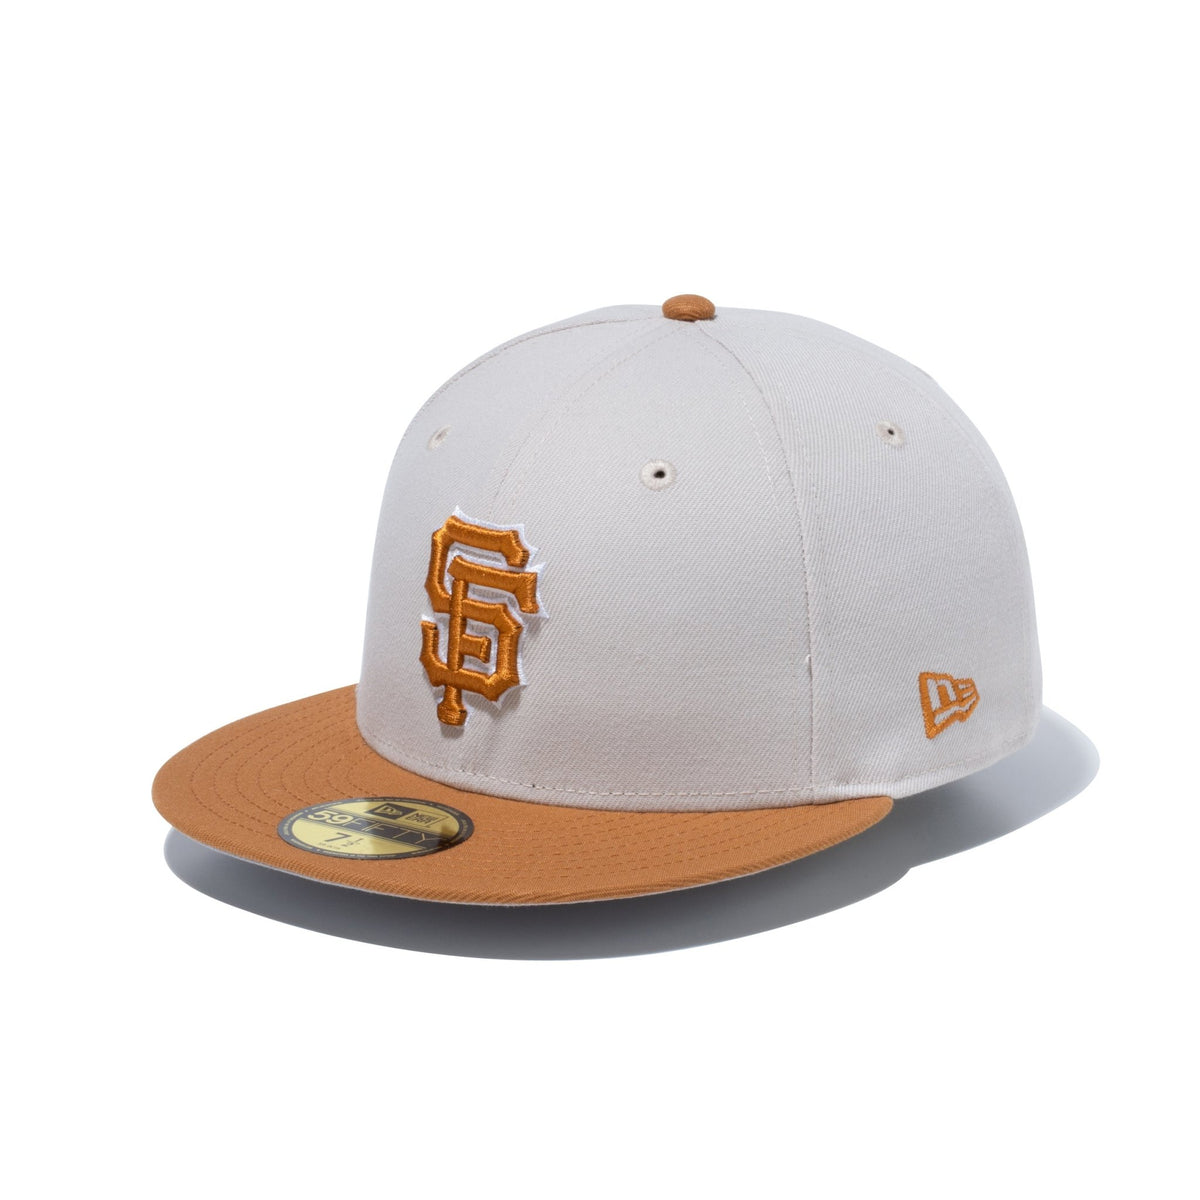 59FIFTY MLB Stone Color サンフランシスコ・ジャイアンツ ストーン